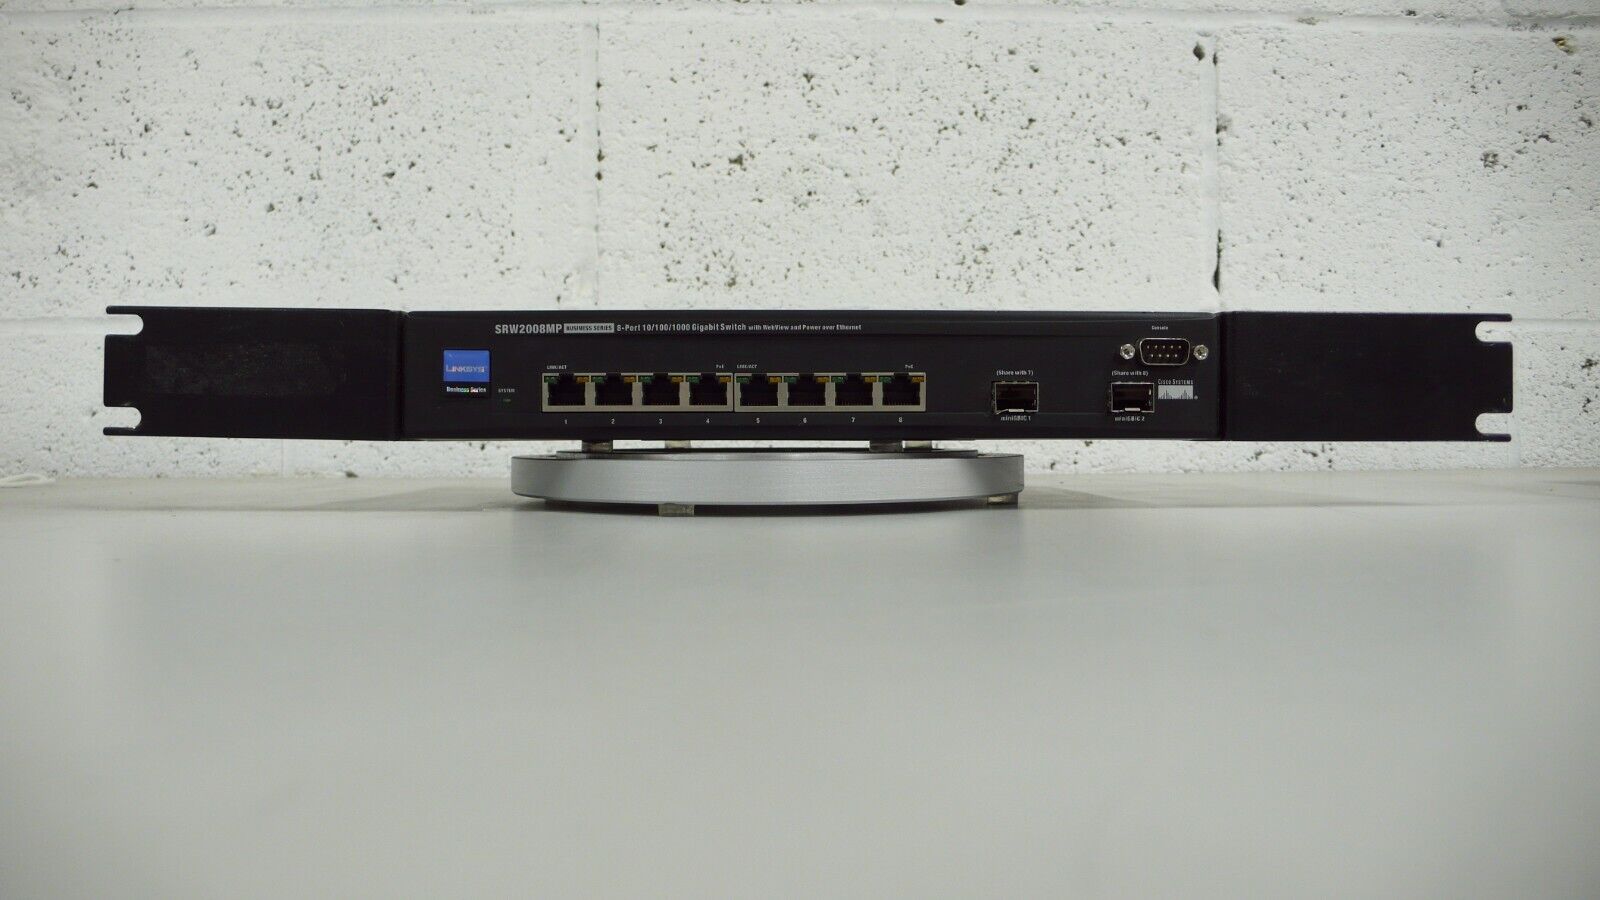 Linksys SRW2008 - 8 port 10/100/1000 Ethernet Switch w/ Power Supply